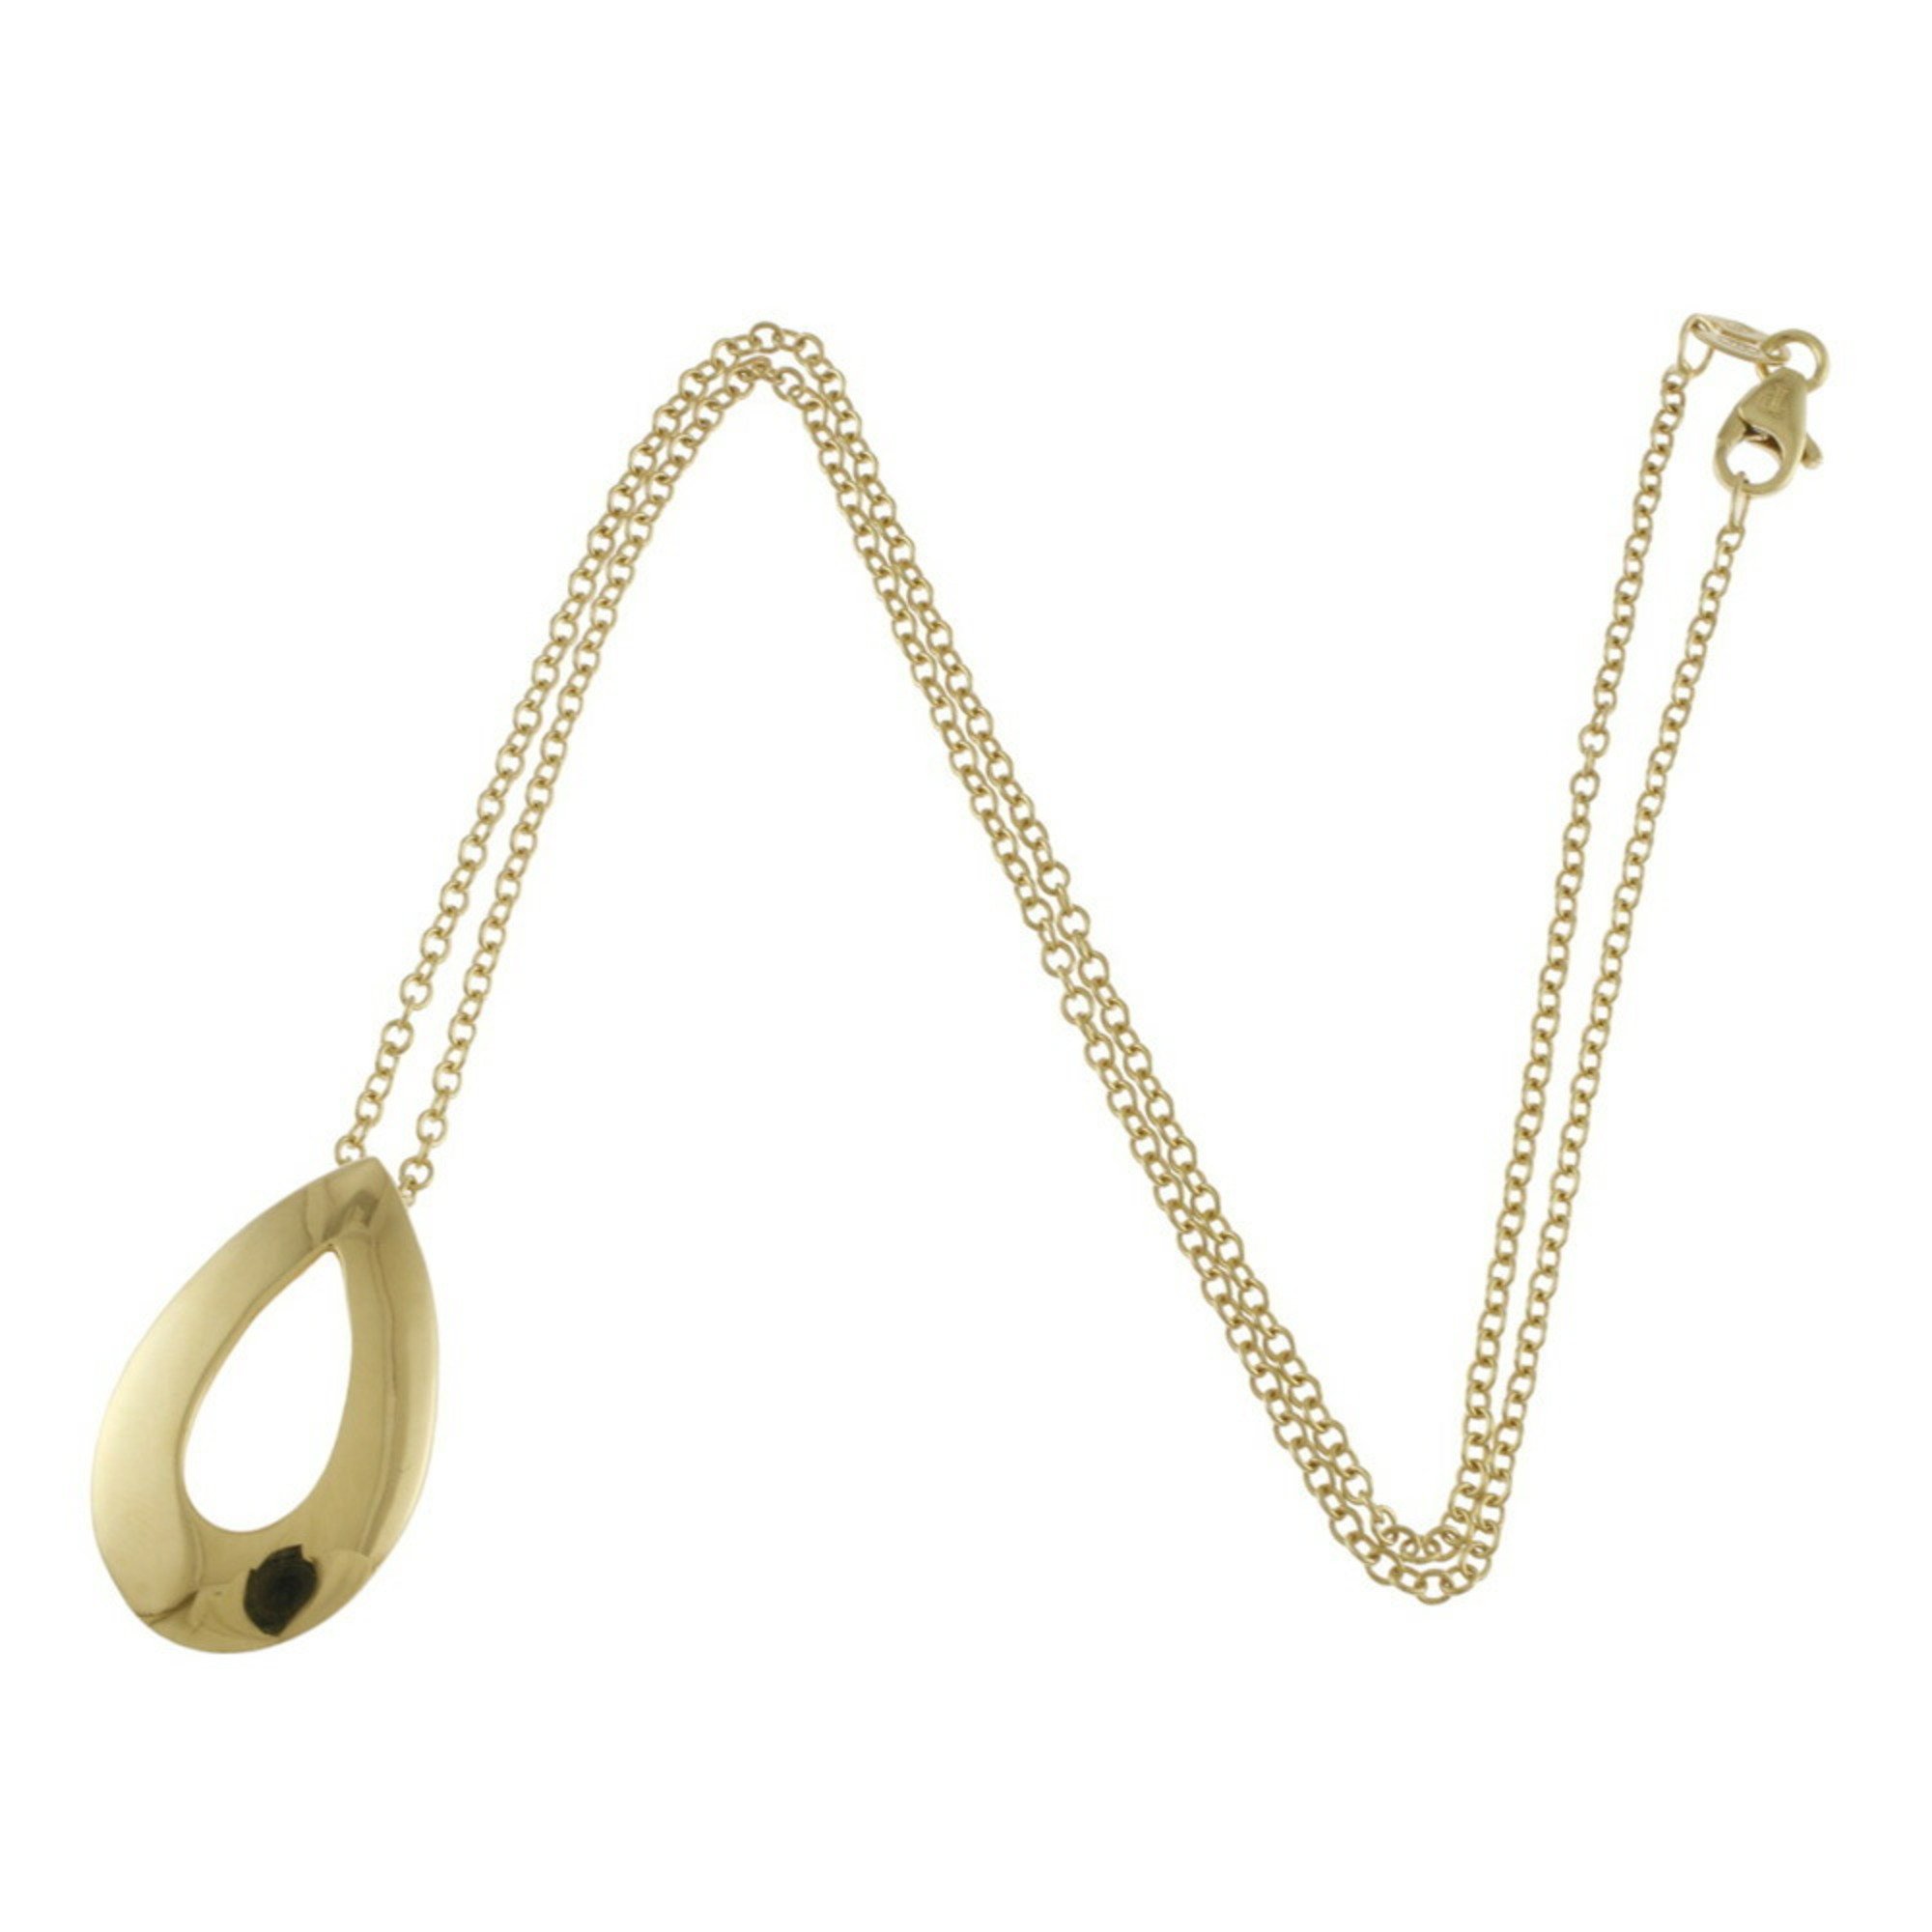 Piaget Millennium Necklace 18K Gold Women's PIAGET BRJ09000000052132